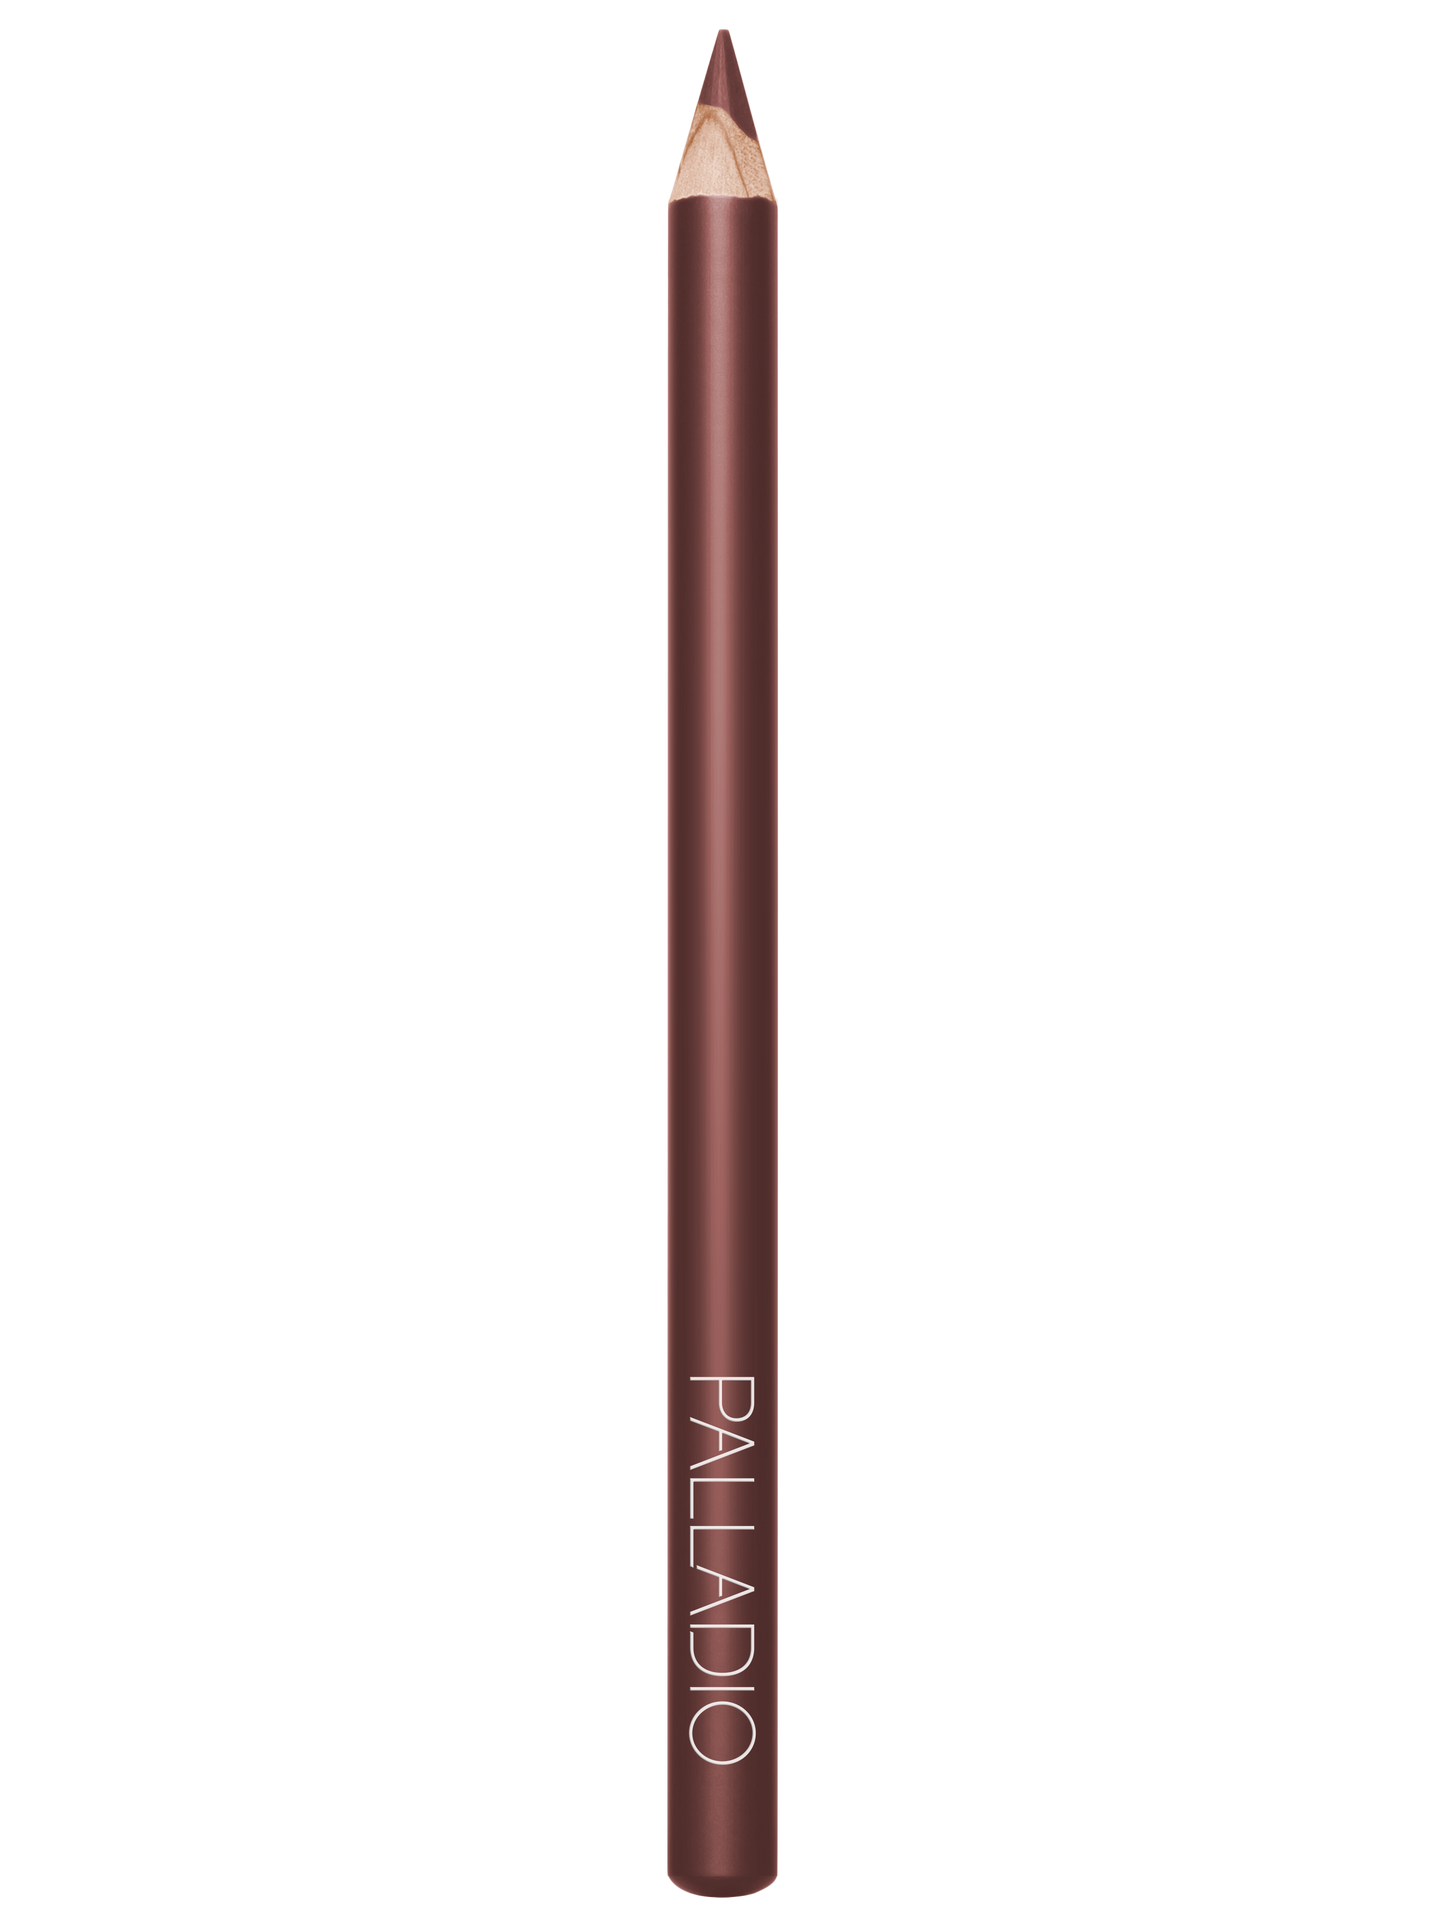 Palladio Lipstick Liner PencilLip LinerPALLADIOColor: Rose Ll303